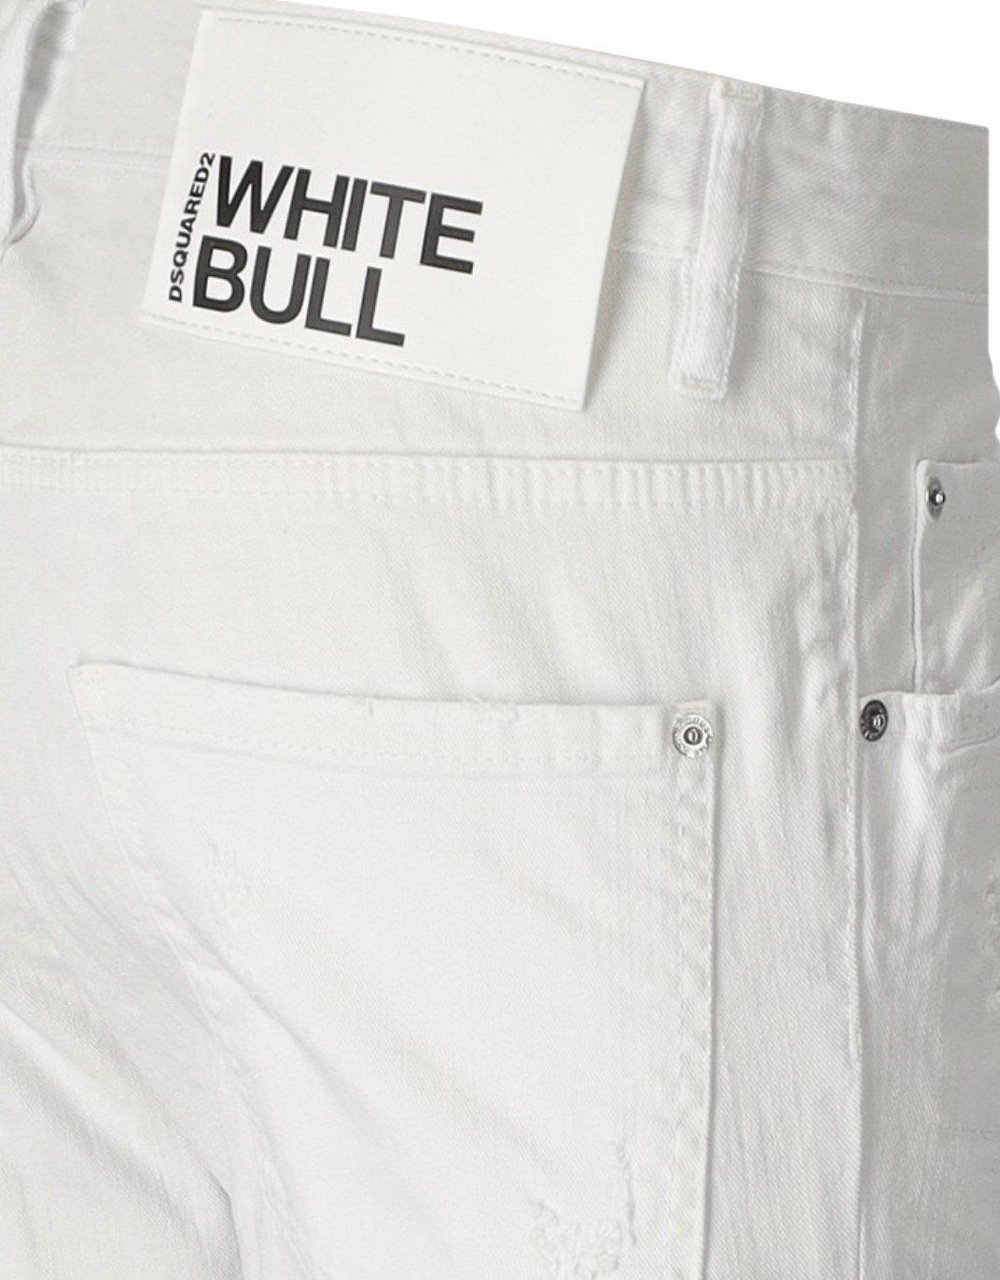 Dsquared2 White Bull Skater White Jeans White Wit